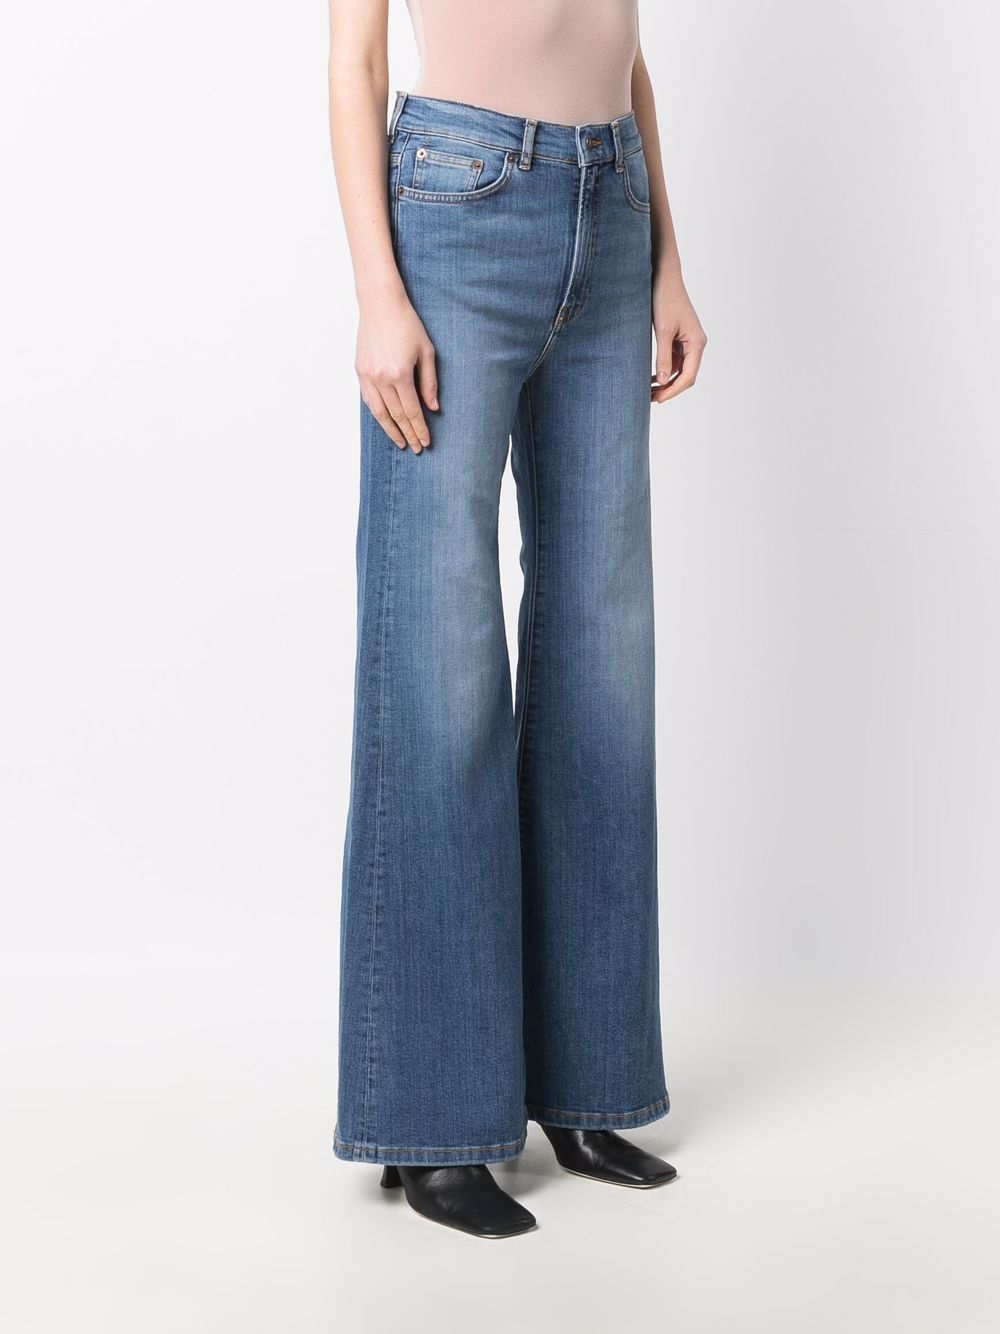 фото Jeanerica расклешенные джинсы fuji с завышенной талией